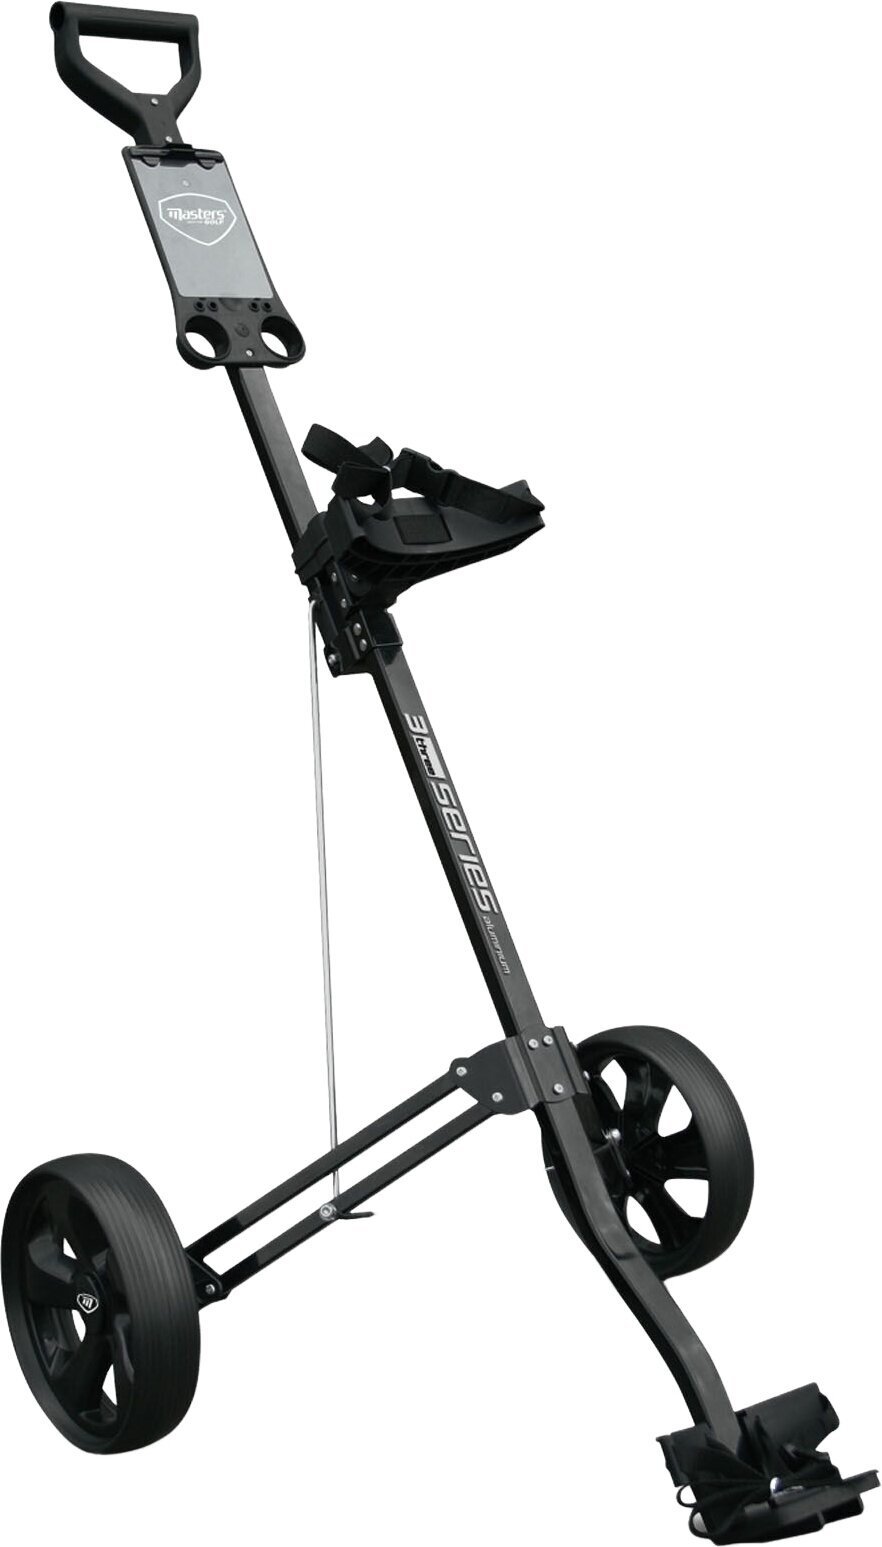 Ръчна количка за голф Masters Golf 3 Series Aluminium 2 Wheel Pull Trolley Black Ръчна количка за голф